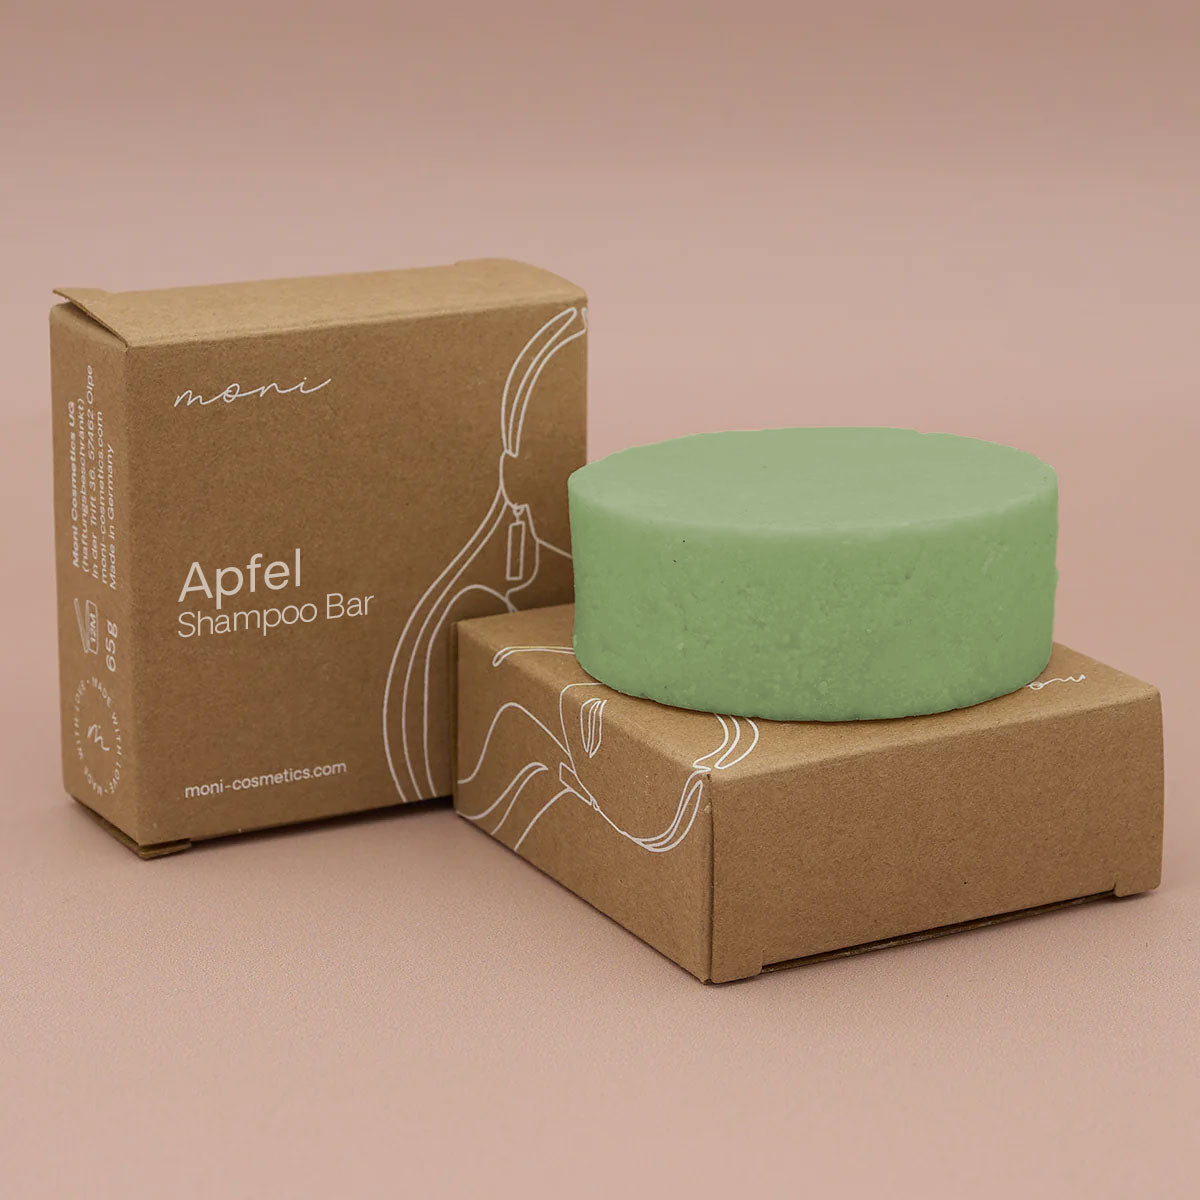 Apfel Shampoo Bar